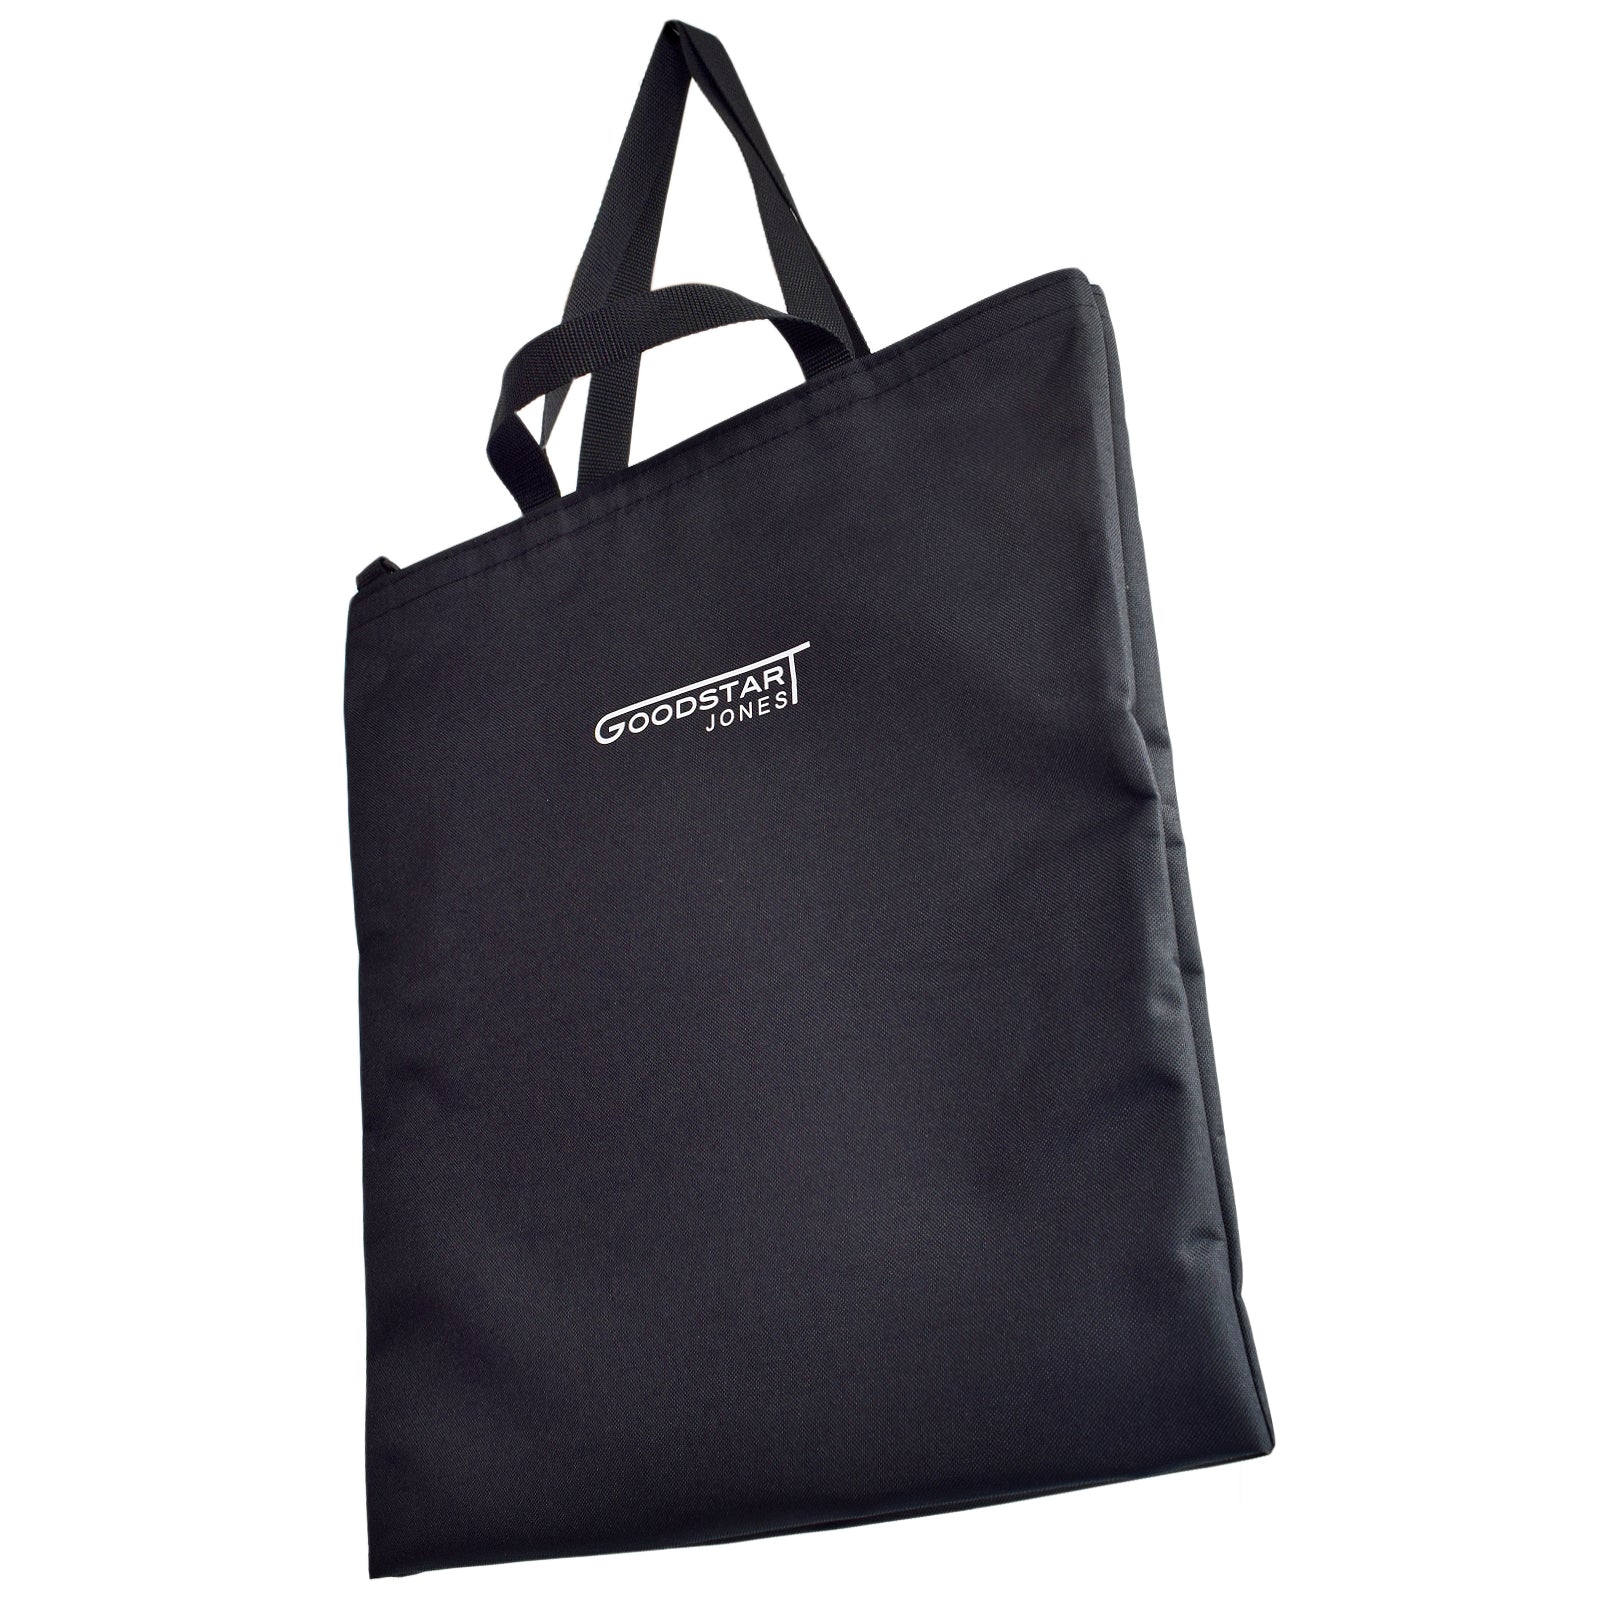 Black Tote Shopper bag Goodstart Jones Logo